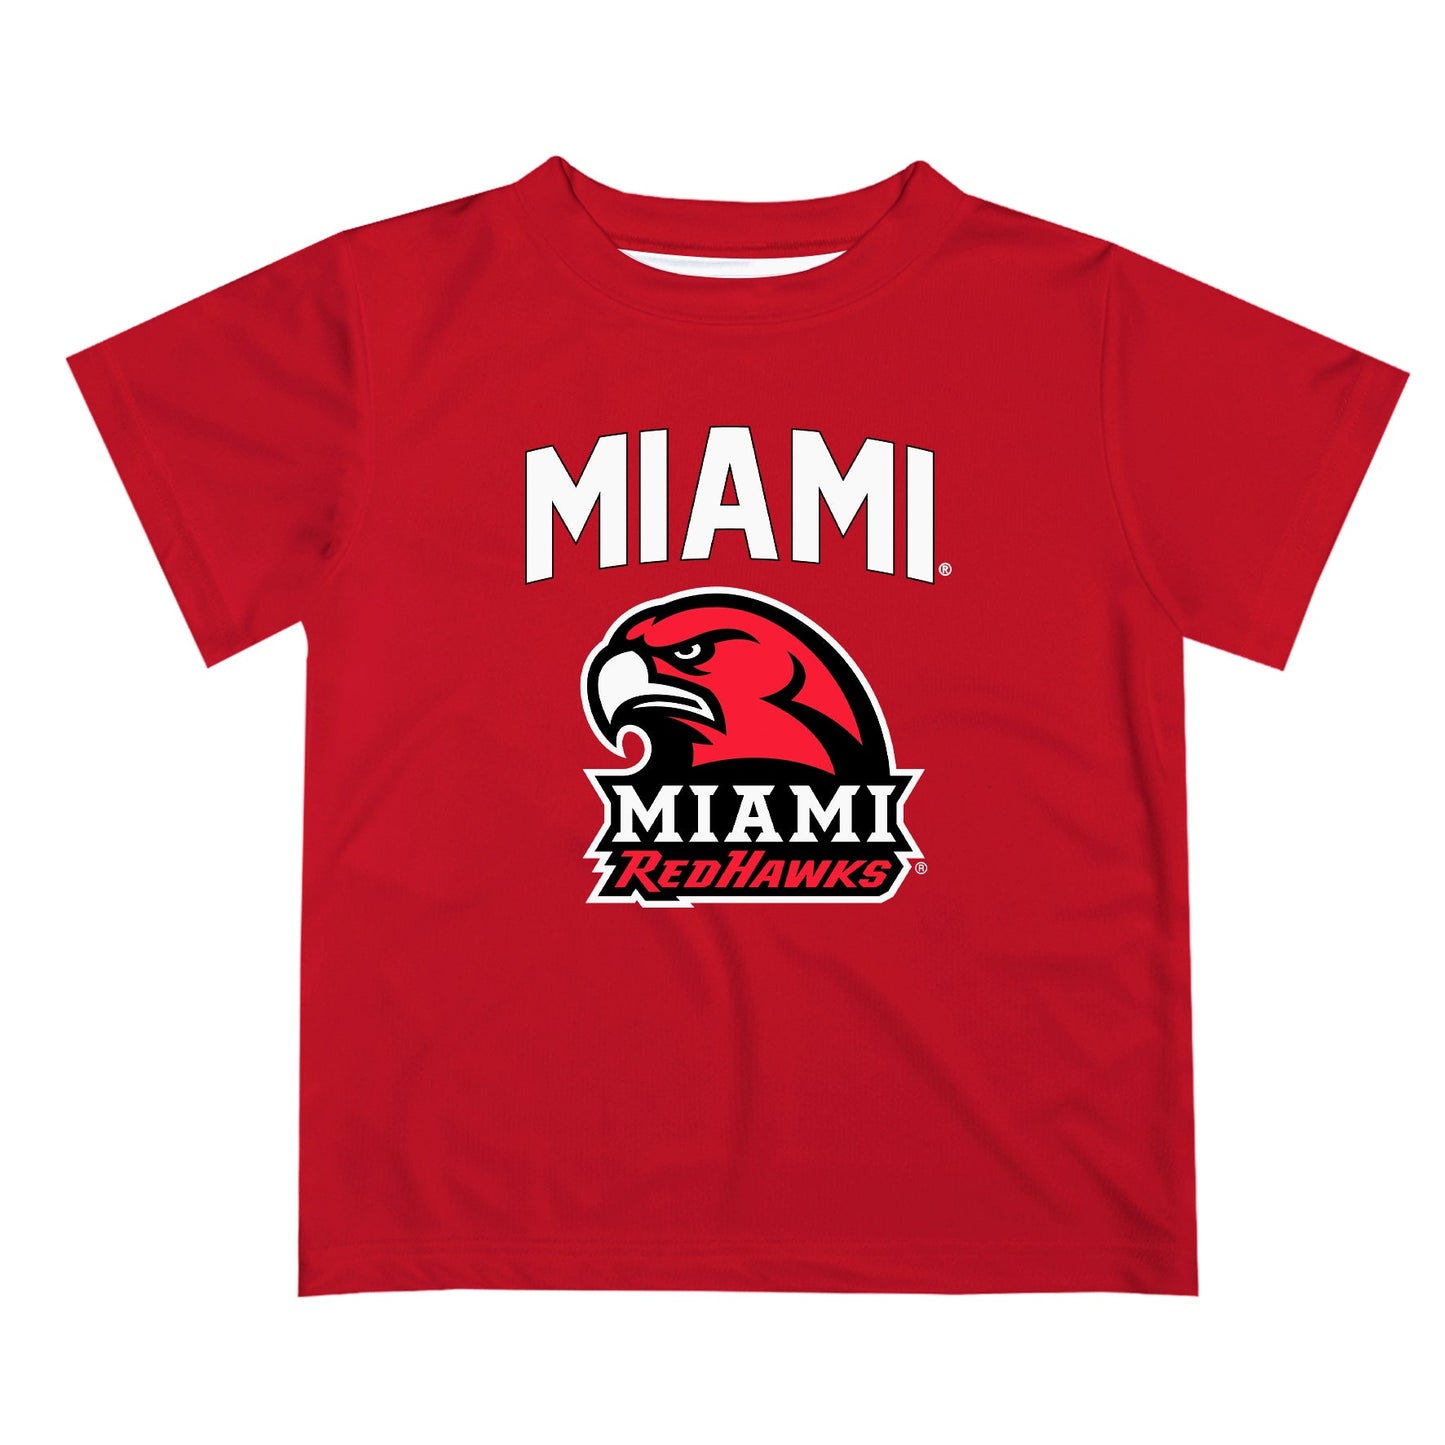 Miami Ohio RedHawks Vive La Fete Boys Game Day V2 Red Short Sleeve Tee Shirt